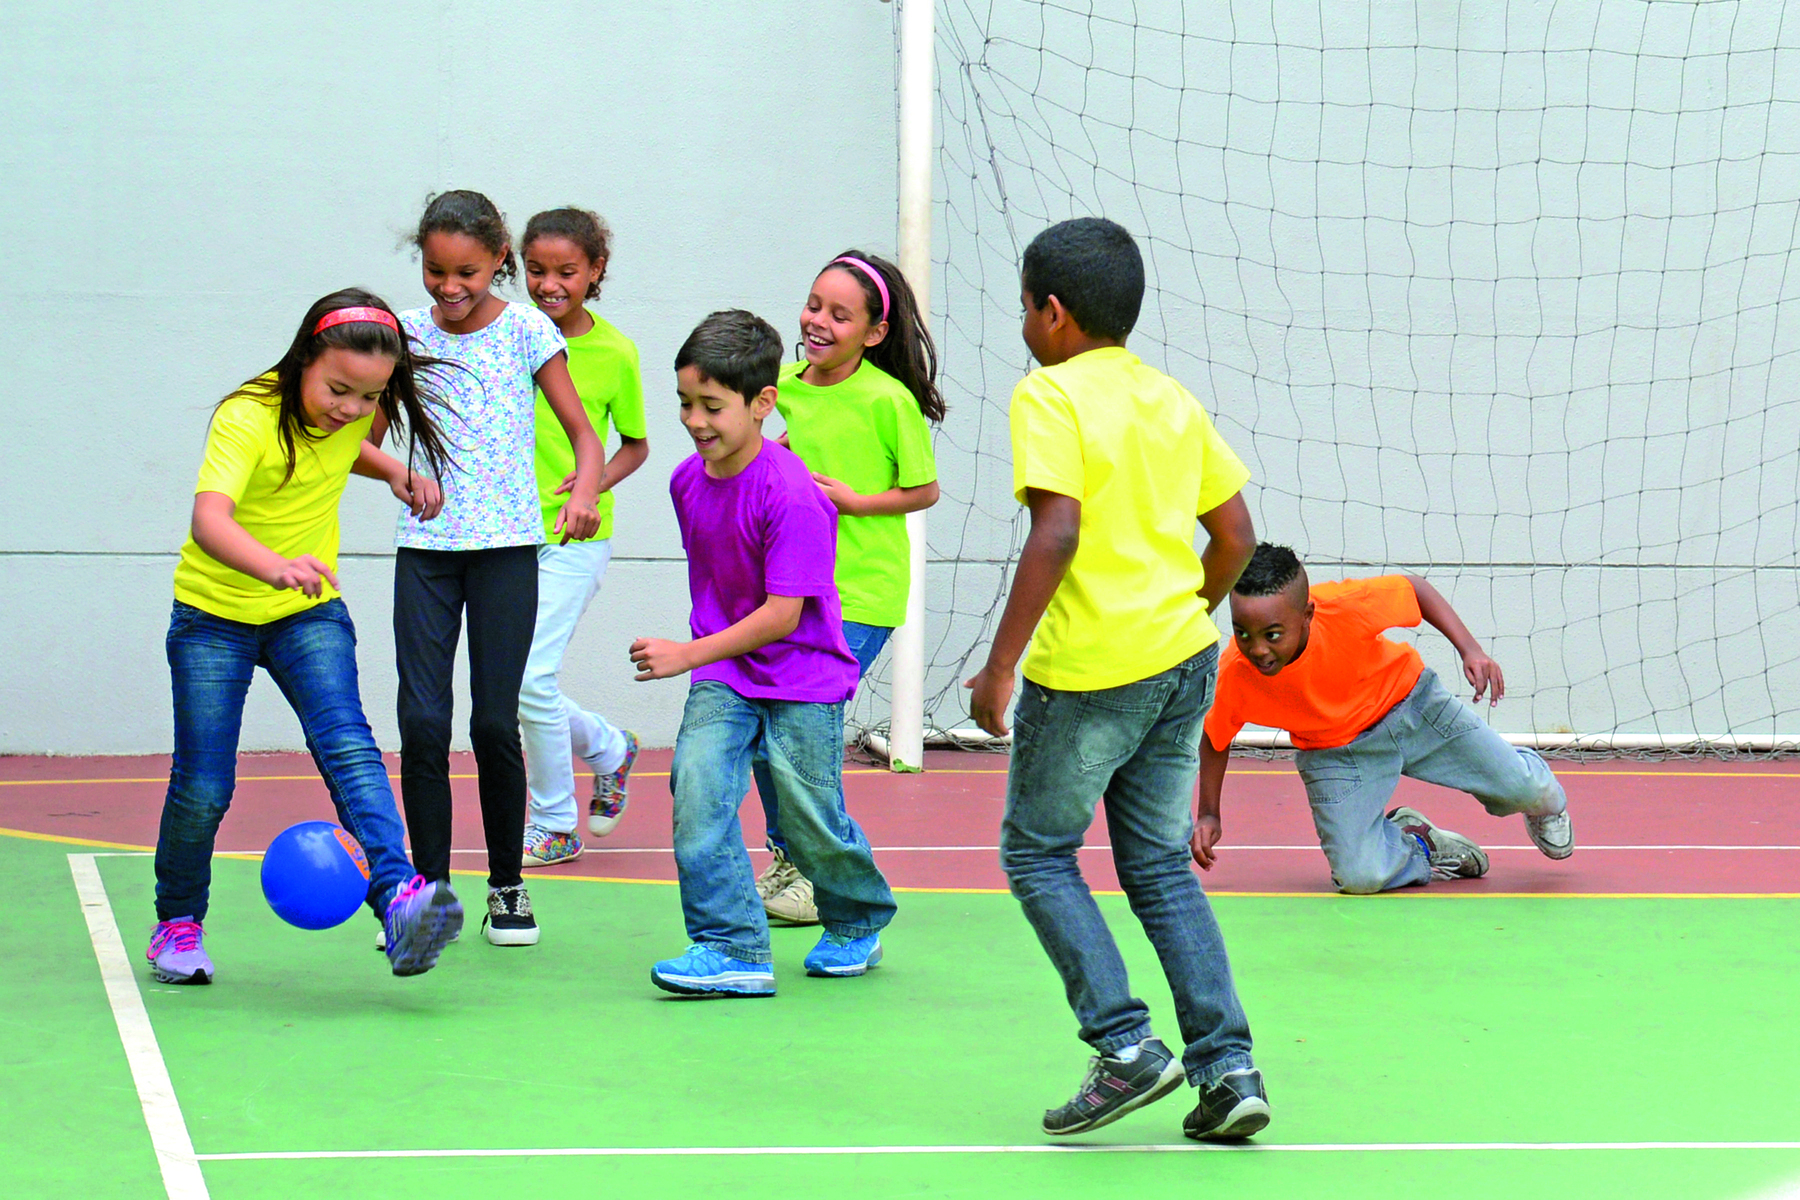 Fotografia. Um grupo de meninas e meninos em uma quadra esportiva, direcionadas a uma bola de futebol. Ao fundo, uma trave branca retangular e uma rede trançada.